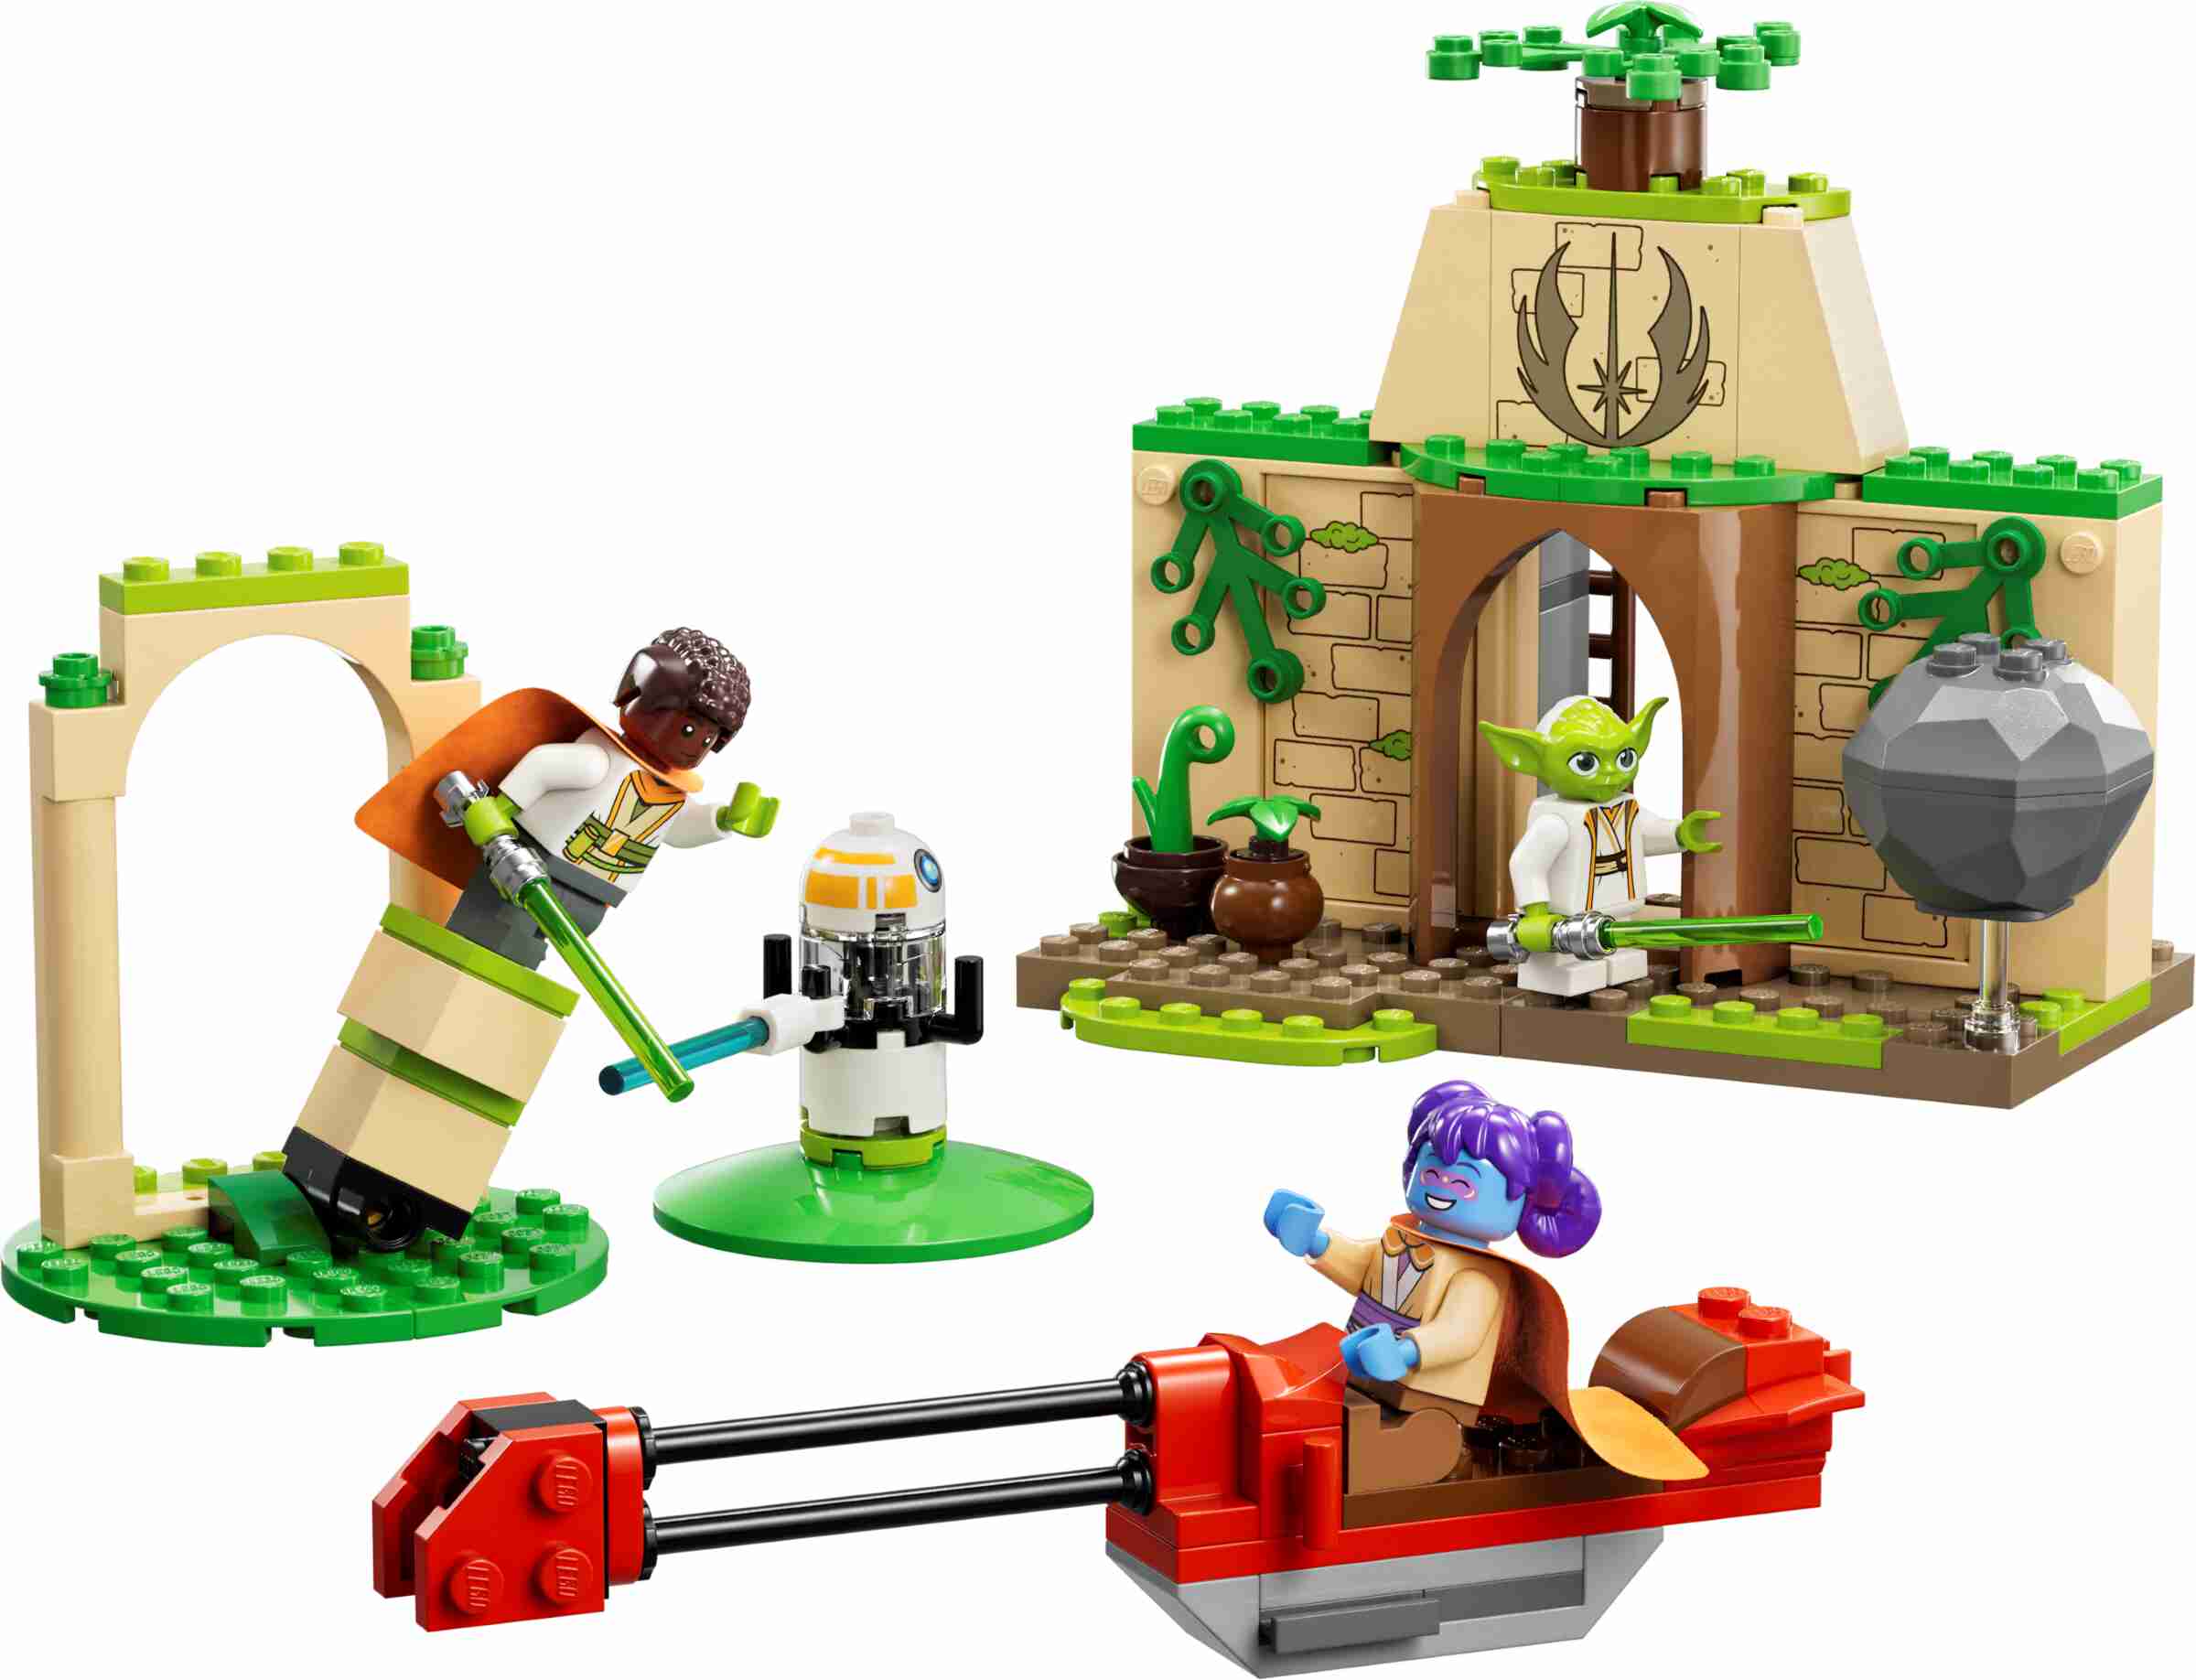 LEGO 75358 Star Wars Tenoo Jedi Temple, für Anfänger mit 3 Minifiguren